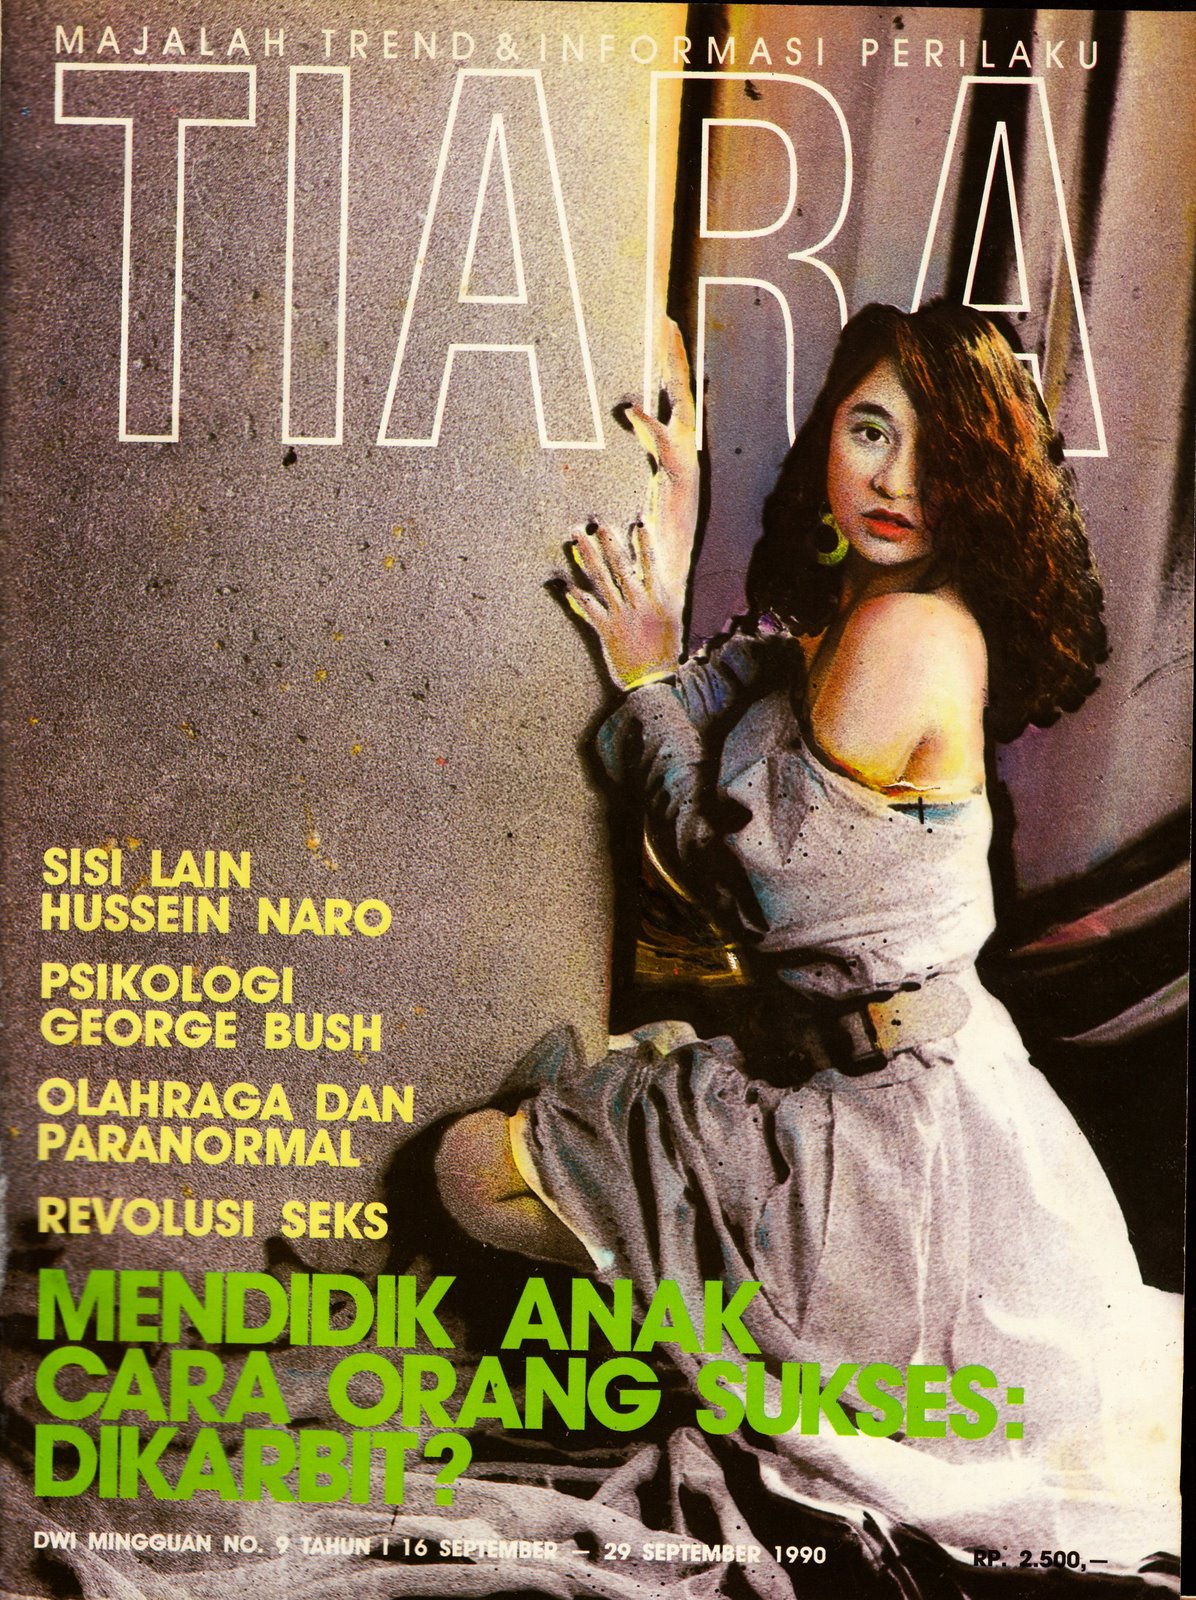 [Tiara+1990.jpg]